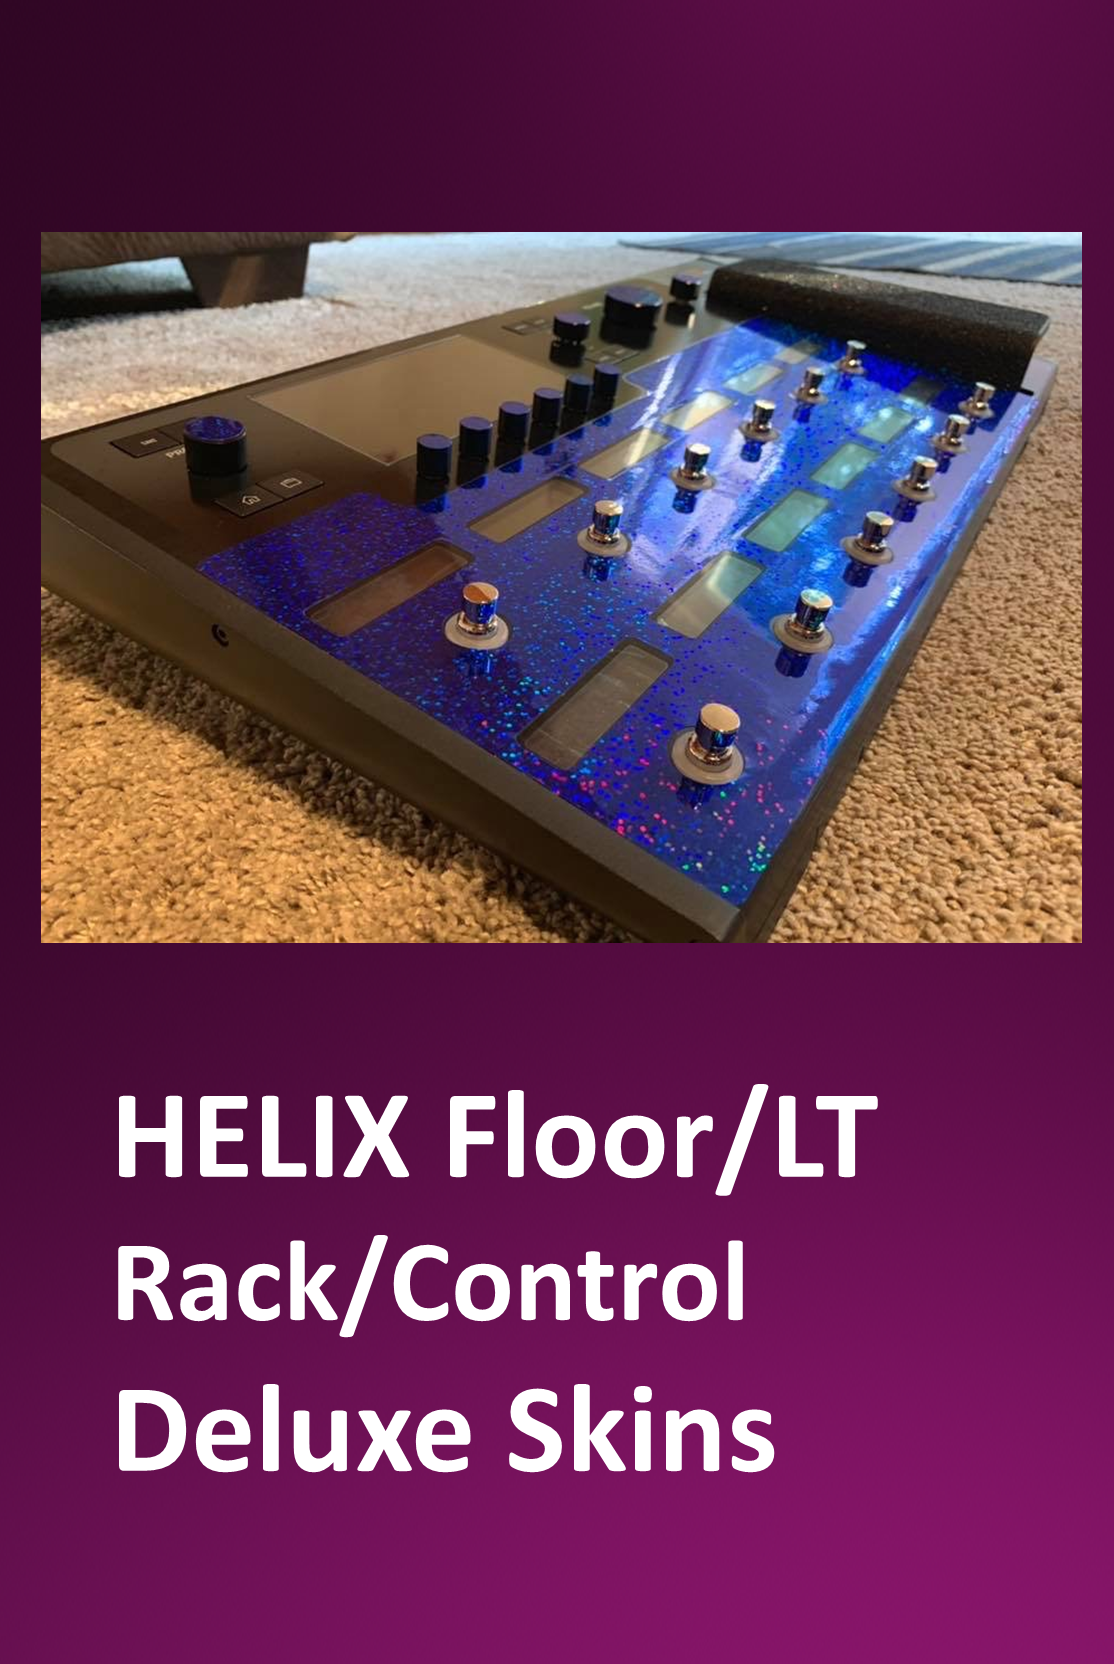 Line 6 HELIX Floor - LT - Rack - Control - Deluxe Skins - USA